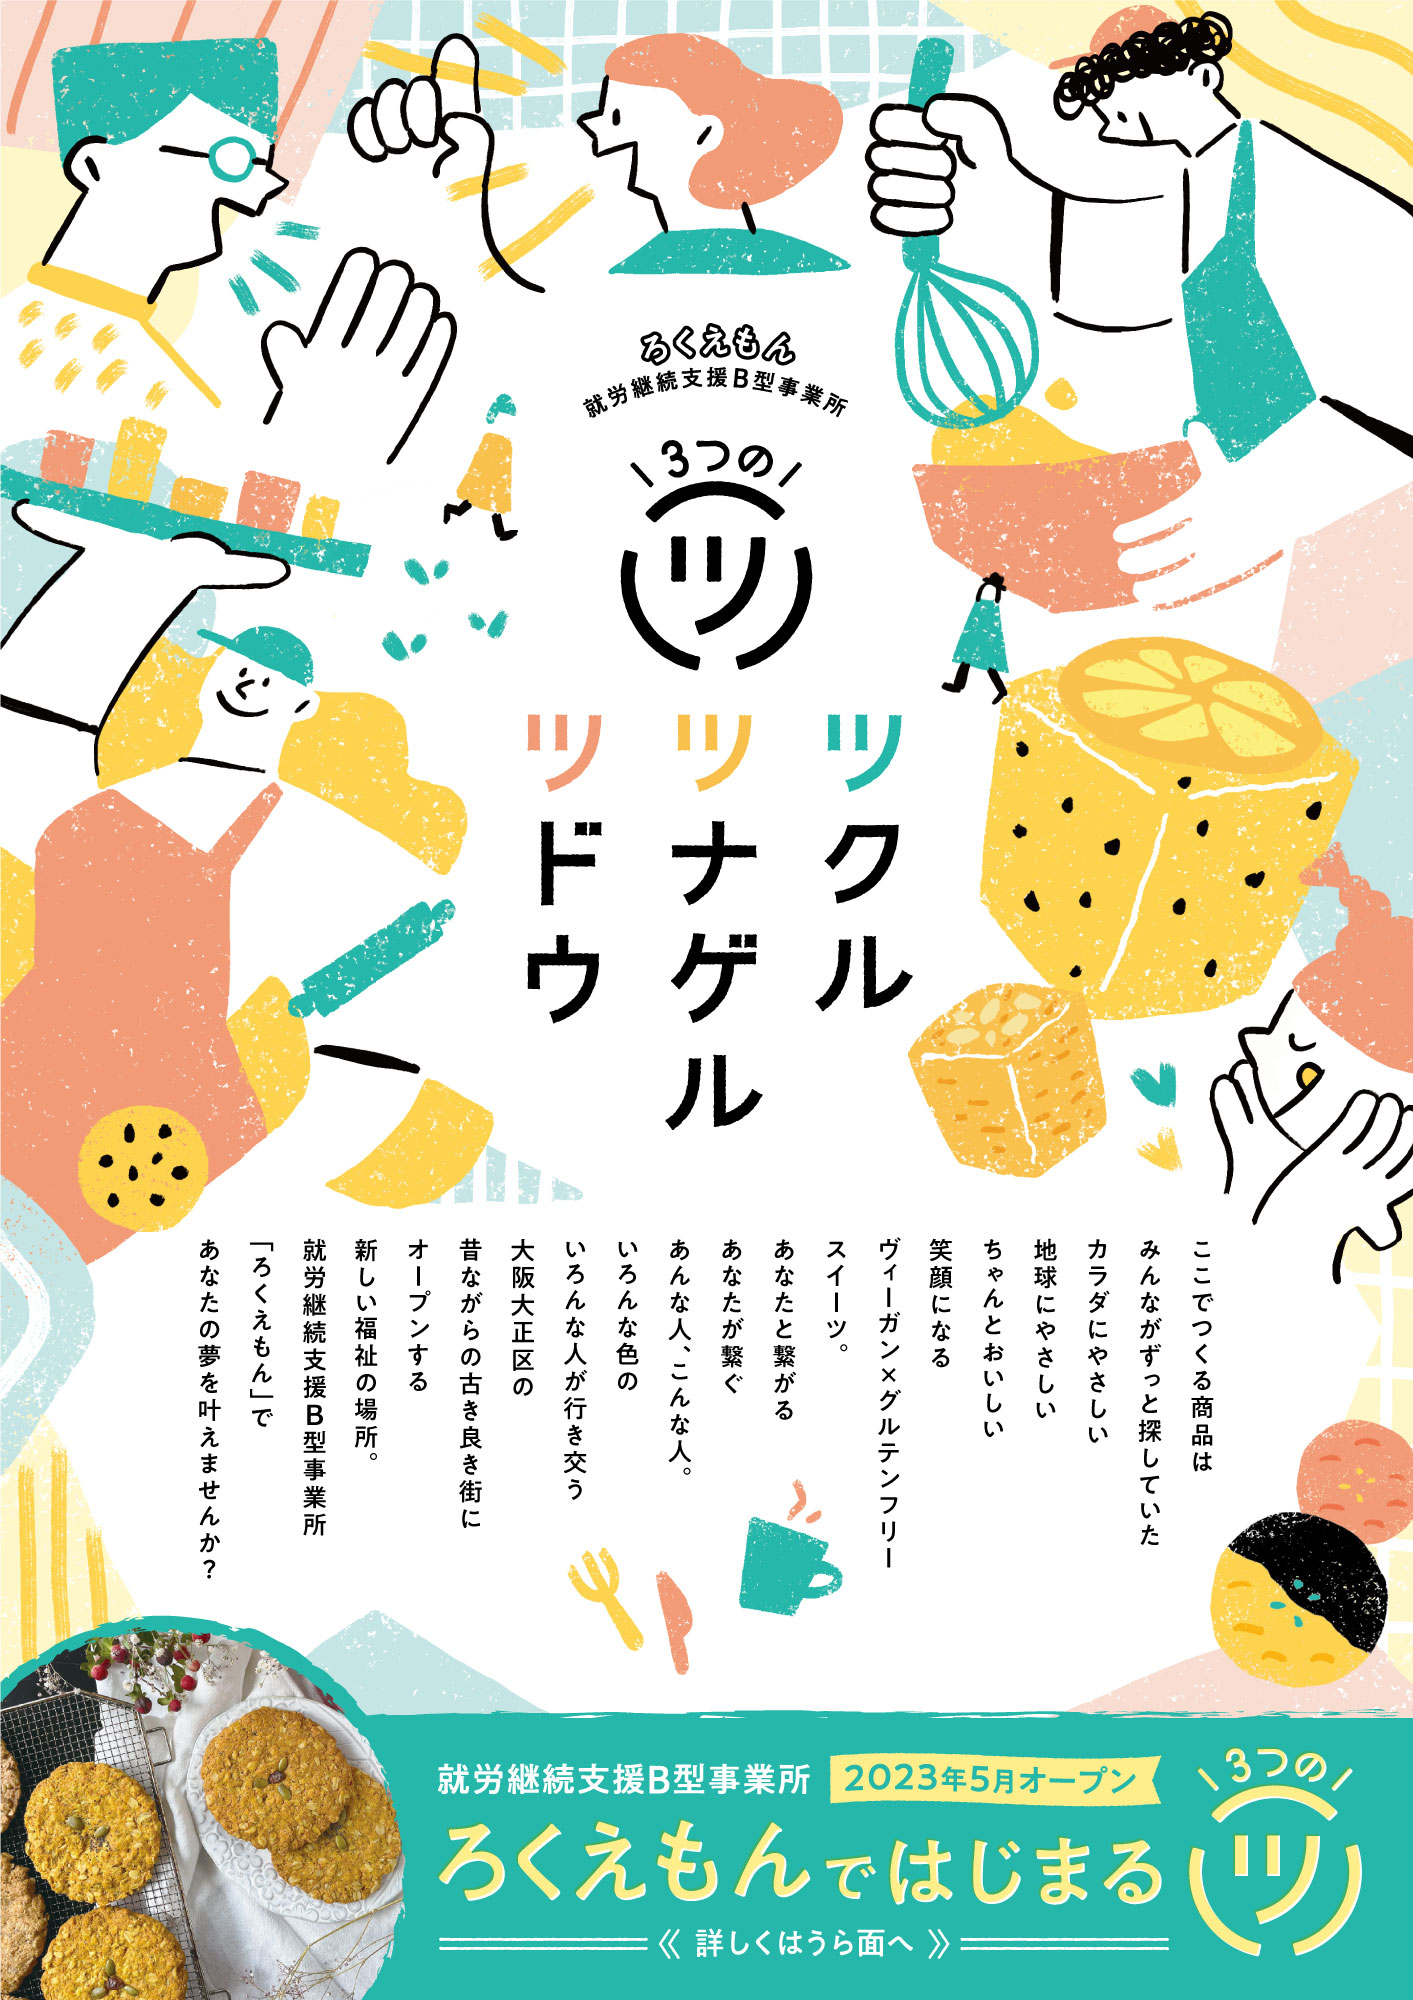 大阪の多様な“つくる”文化を伝え、耕すWebメディア「paper C」様にヨリドコ大正るつぼんを取材いただきました。